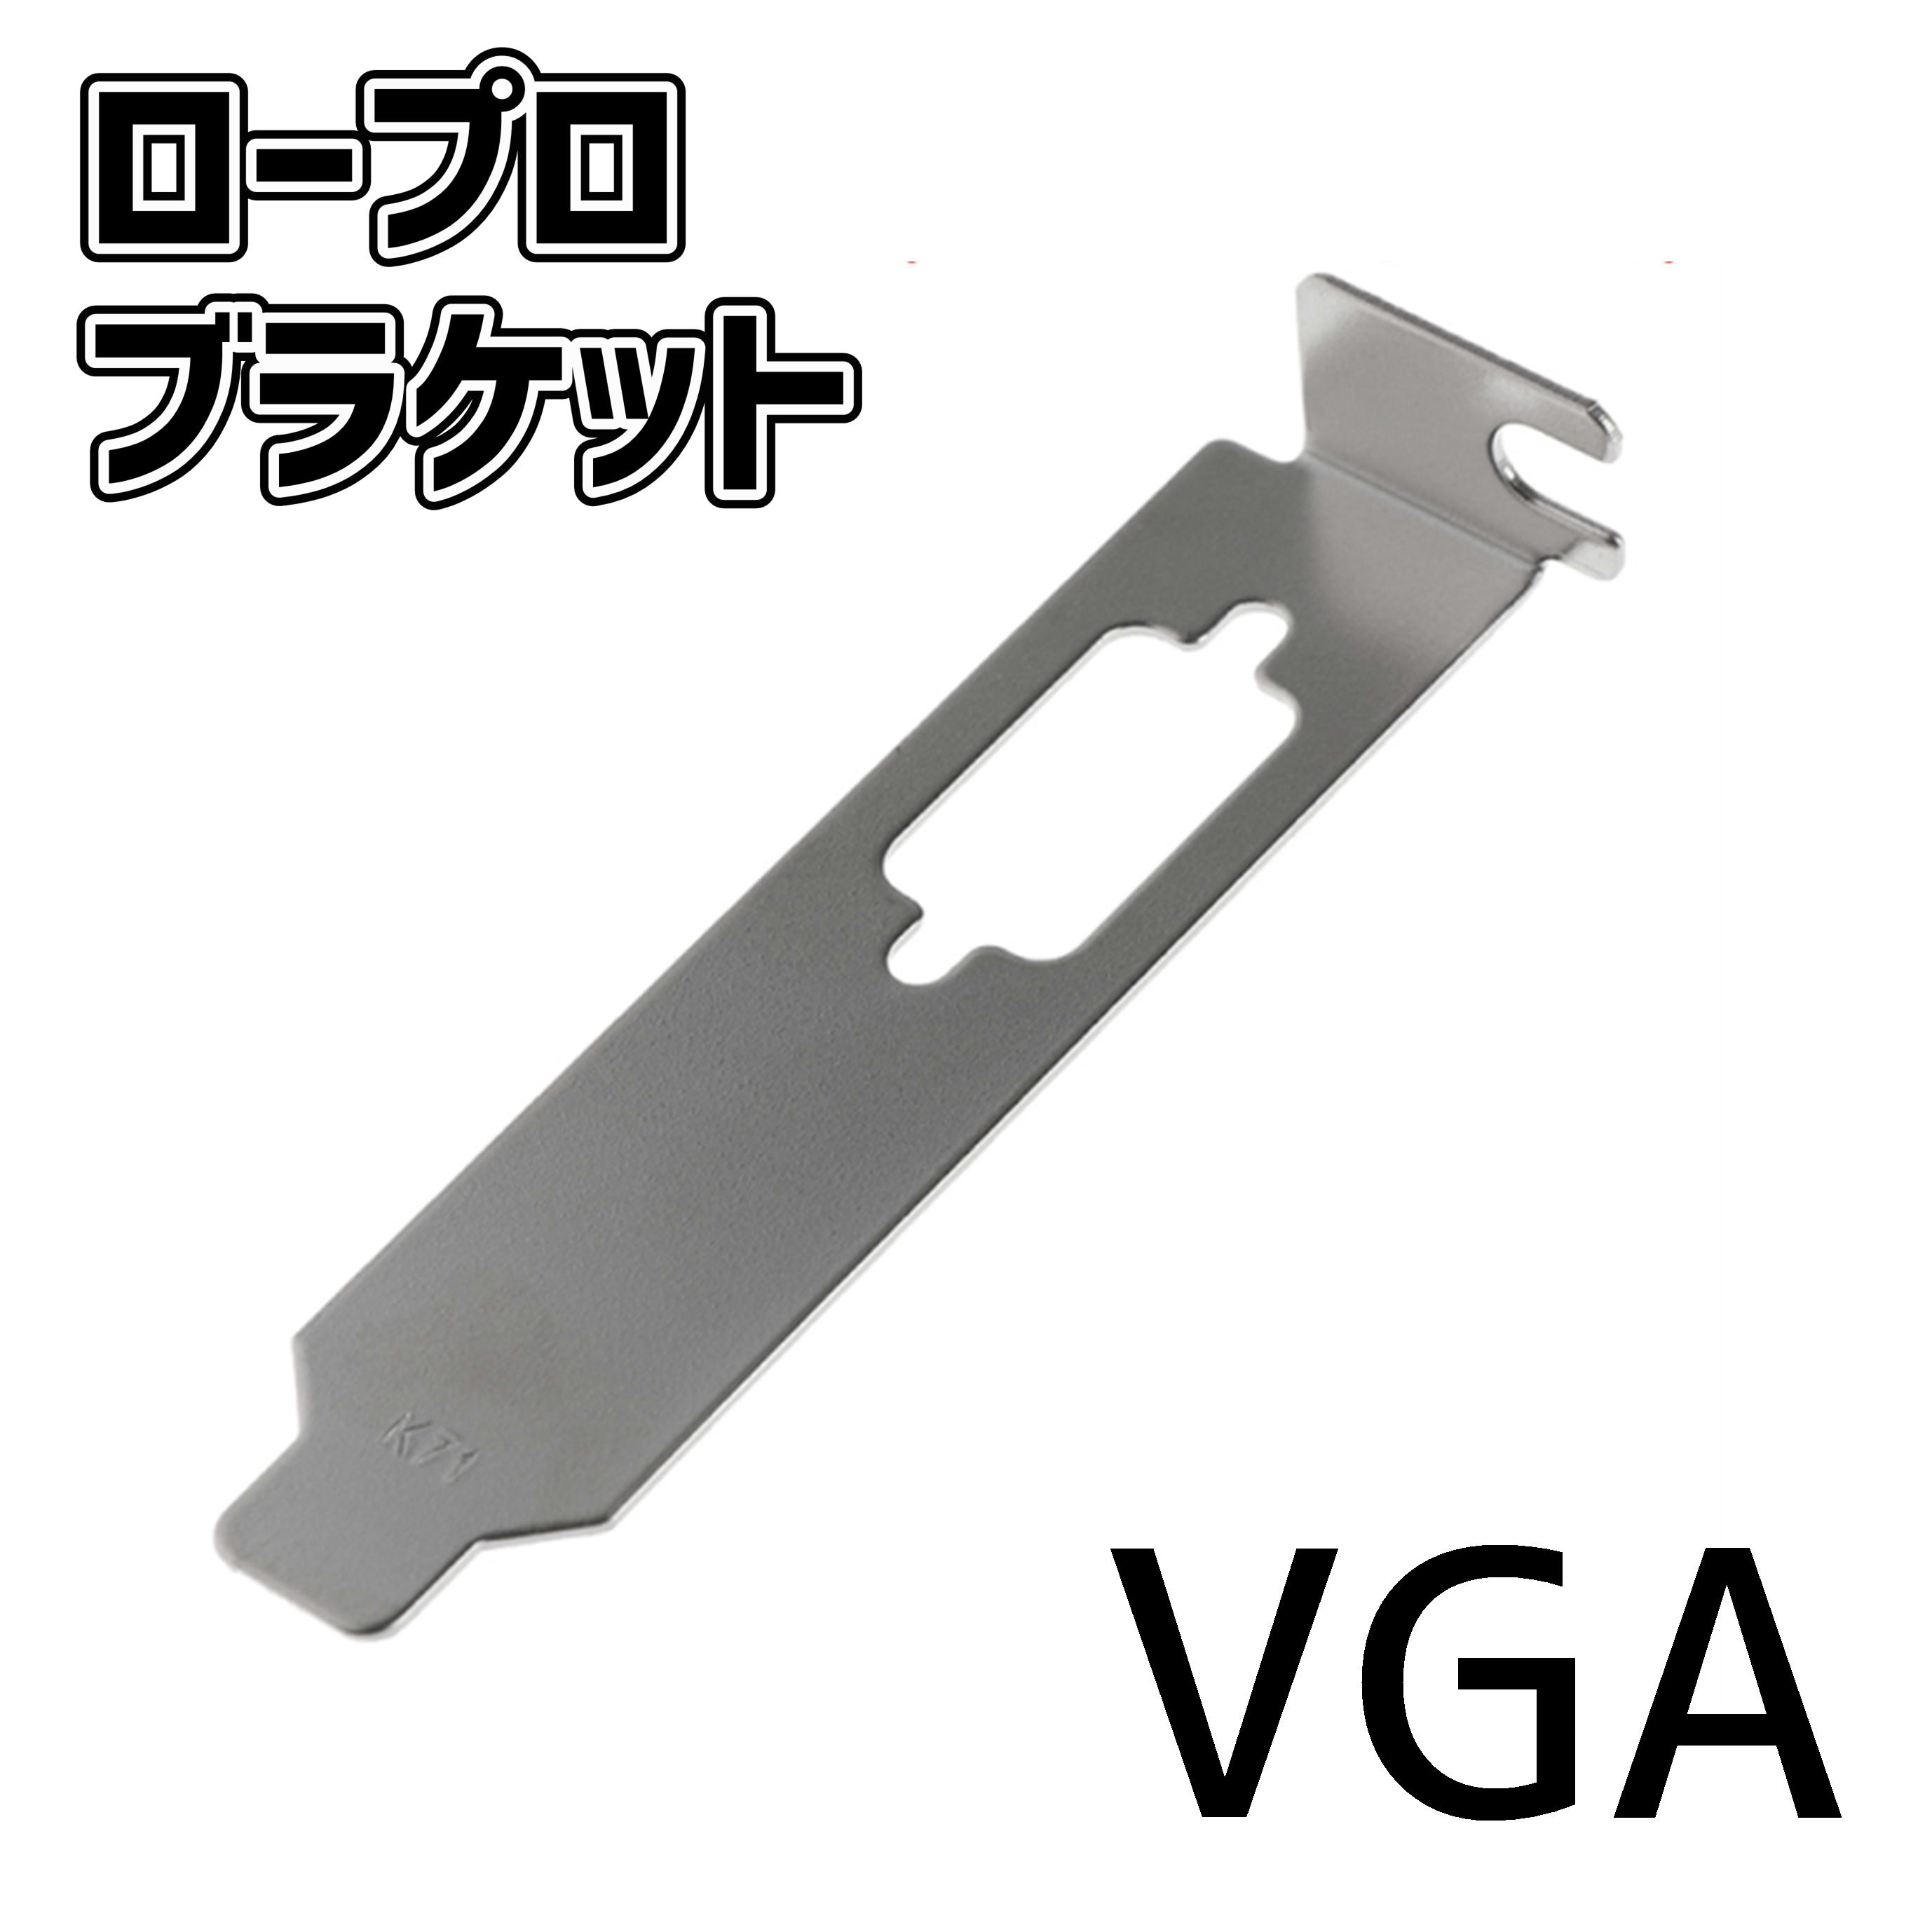 送料無料 ビデオカード用ロープロファイルブラケット VGA[I2]